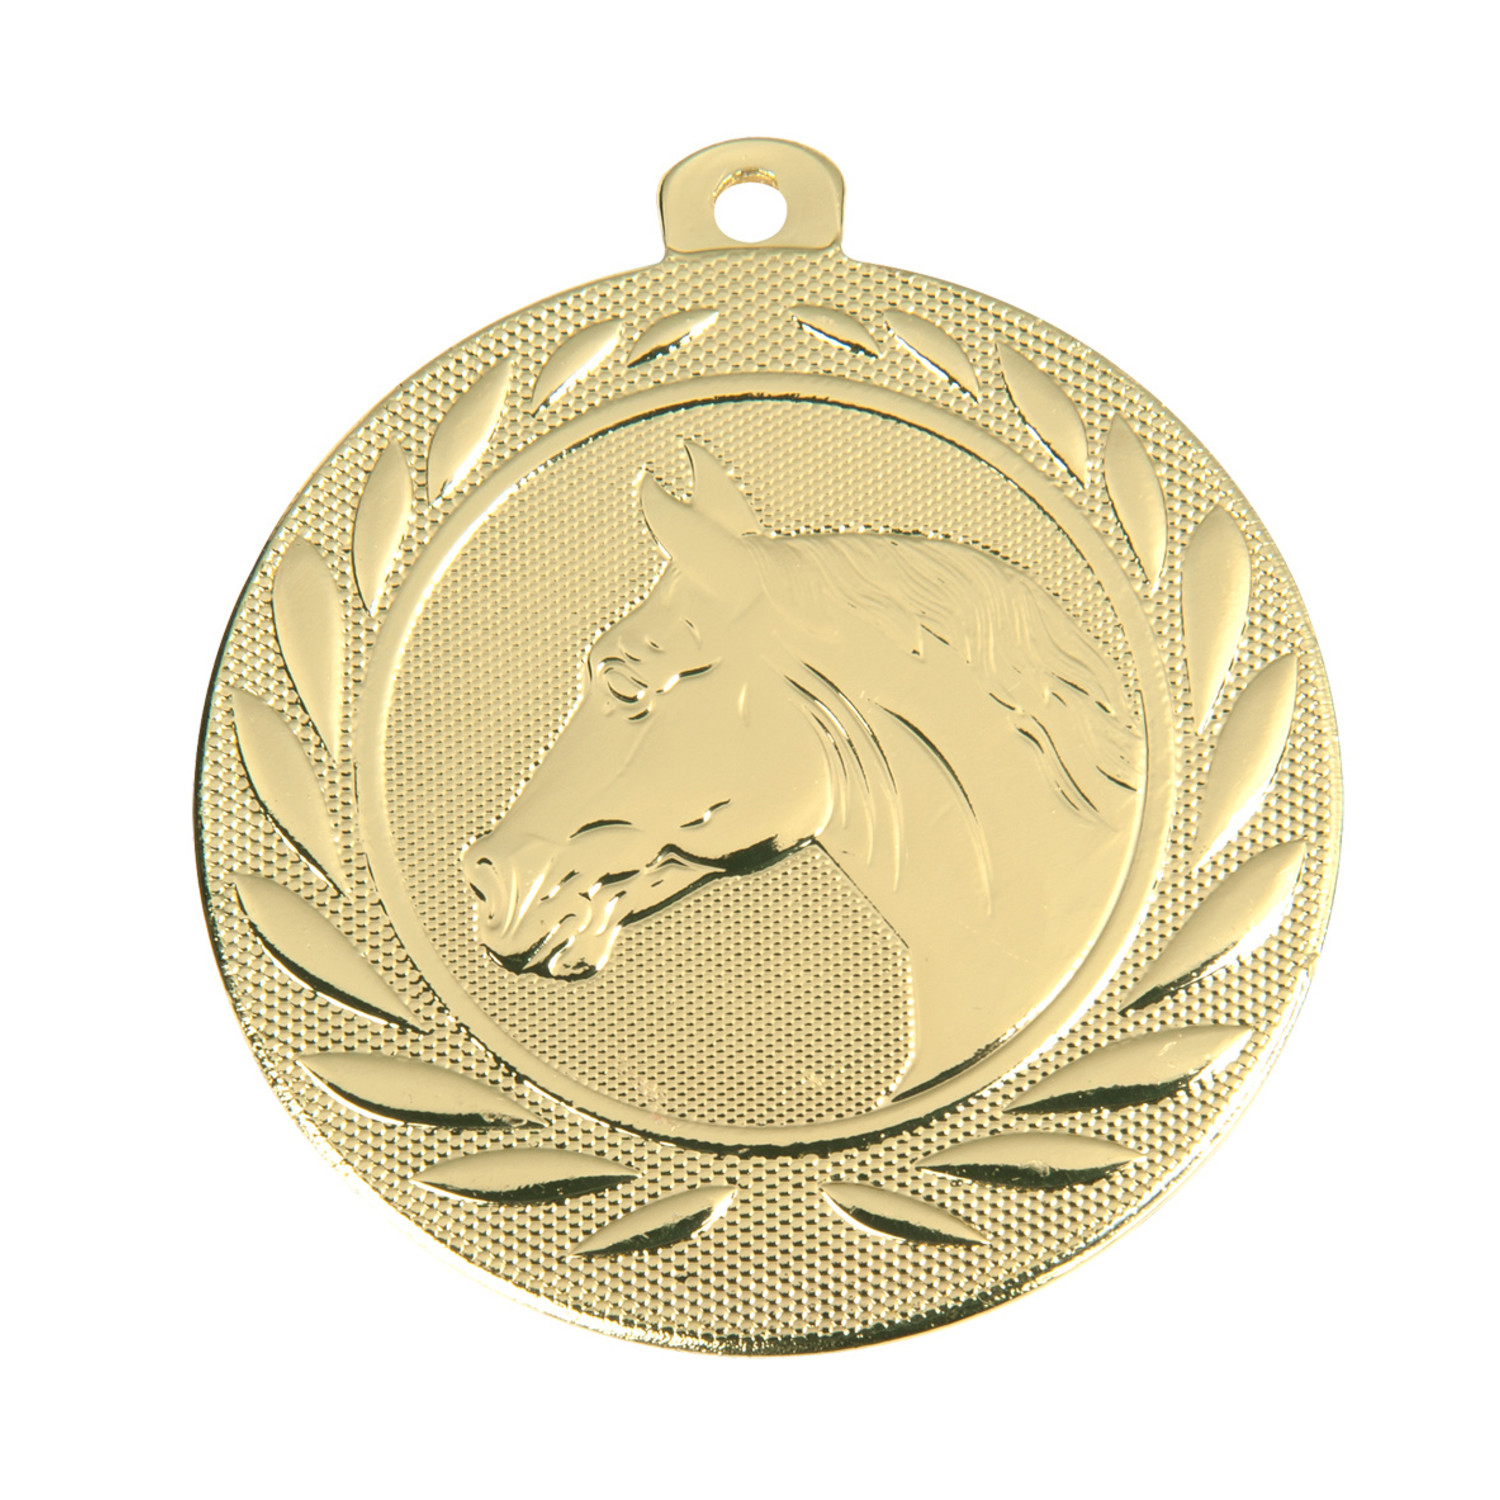 deksel Hardheid Seminarie Paarden medailles - Copa sportprijzen